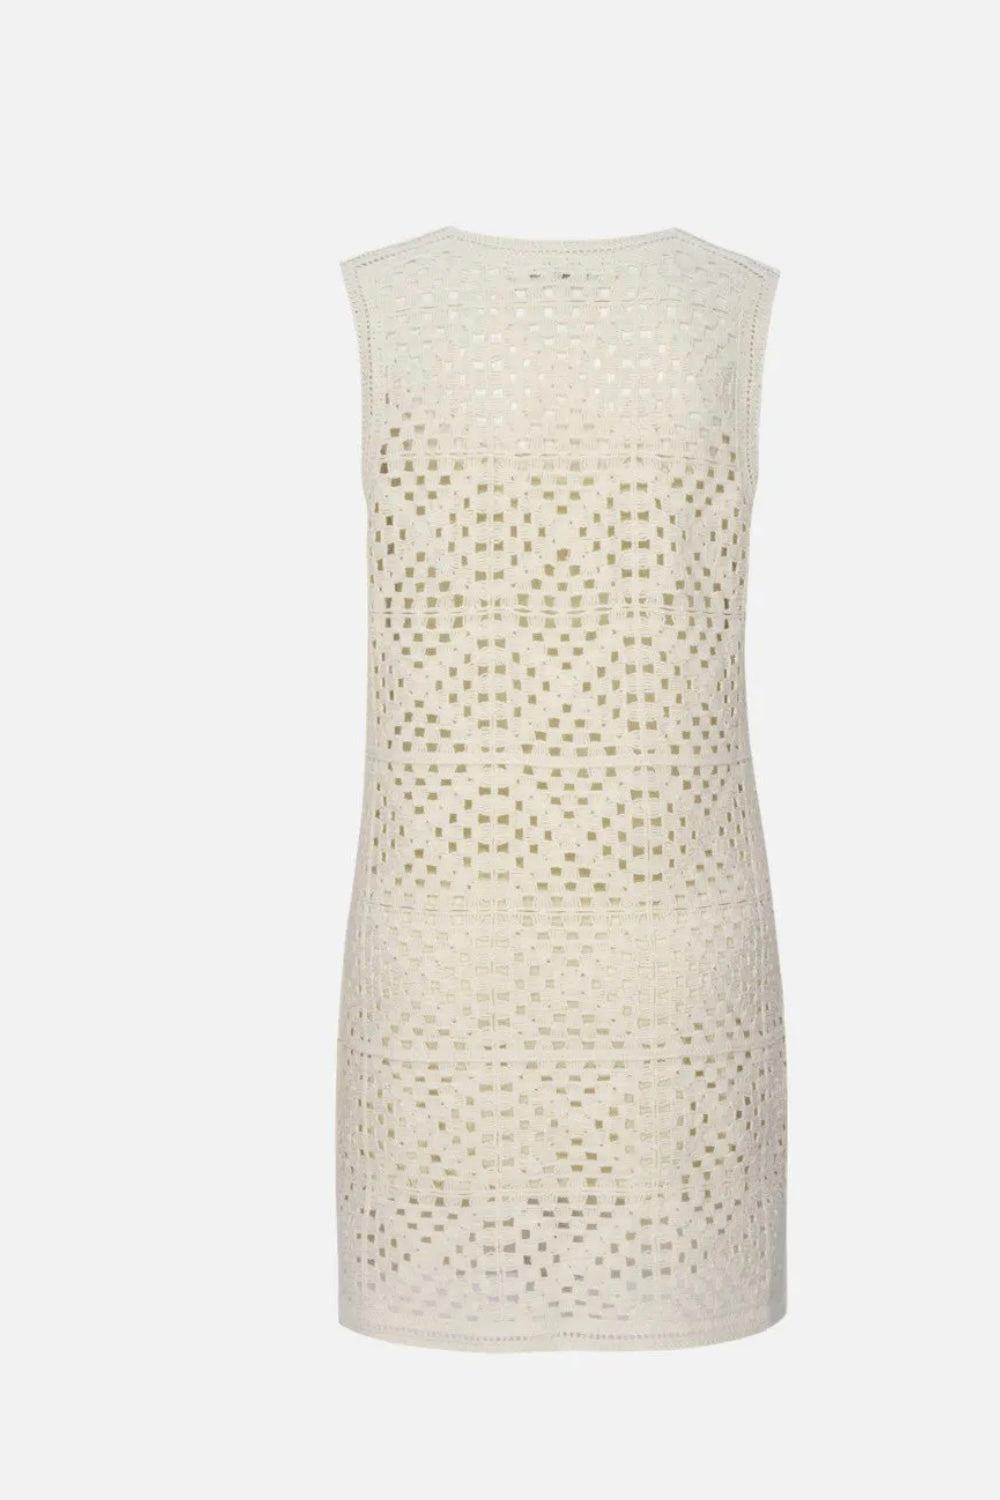 Frame - Crochet Tassel Popover Dress